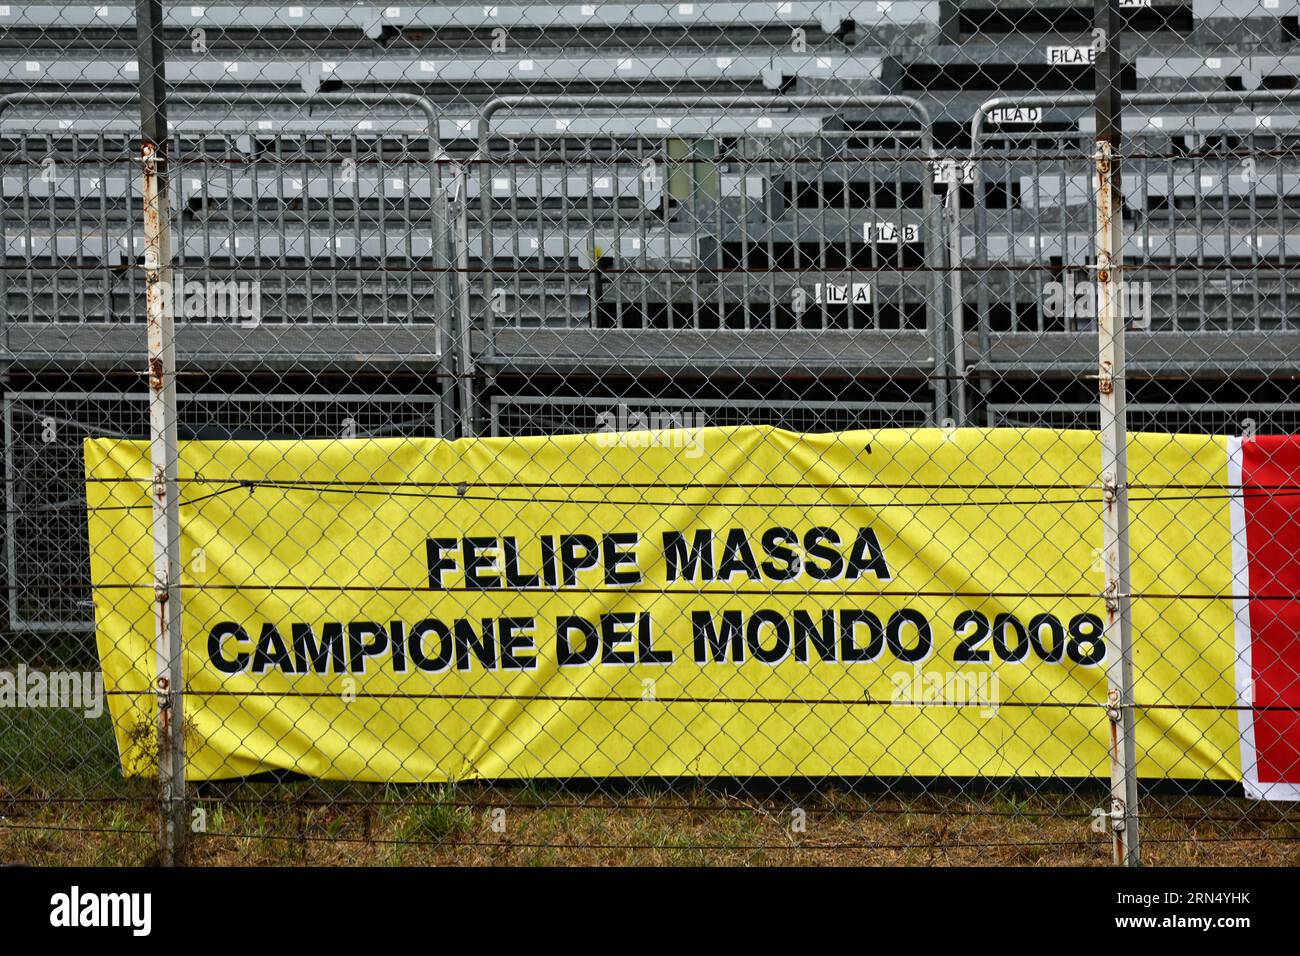 Monza, Italien. August 2023 31. Circuit Atmosphere – Ein Banner zur Unterstützung von Felipe Massa (BRA) und seinem Wunsch, die F1-Weltmeisterschaft 2008 zu gewinnen. 31.08.2023. Formel-1-Weltmeisterschaft, Rd 15, Grand Prix Von Italien, Monza, Italien, Vorbereitungstag. Auf dem Foto sollte Folgendes stehen: XPB/Press Association Images. Quelle: XPB Images Ltd/Alamy Live News Stockfoto